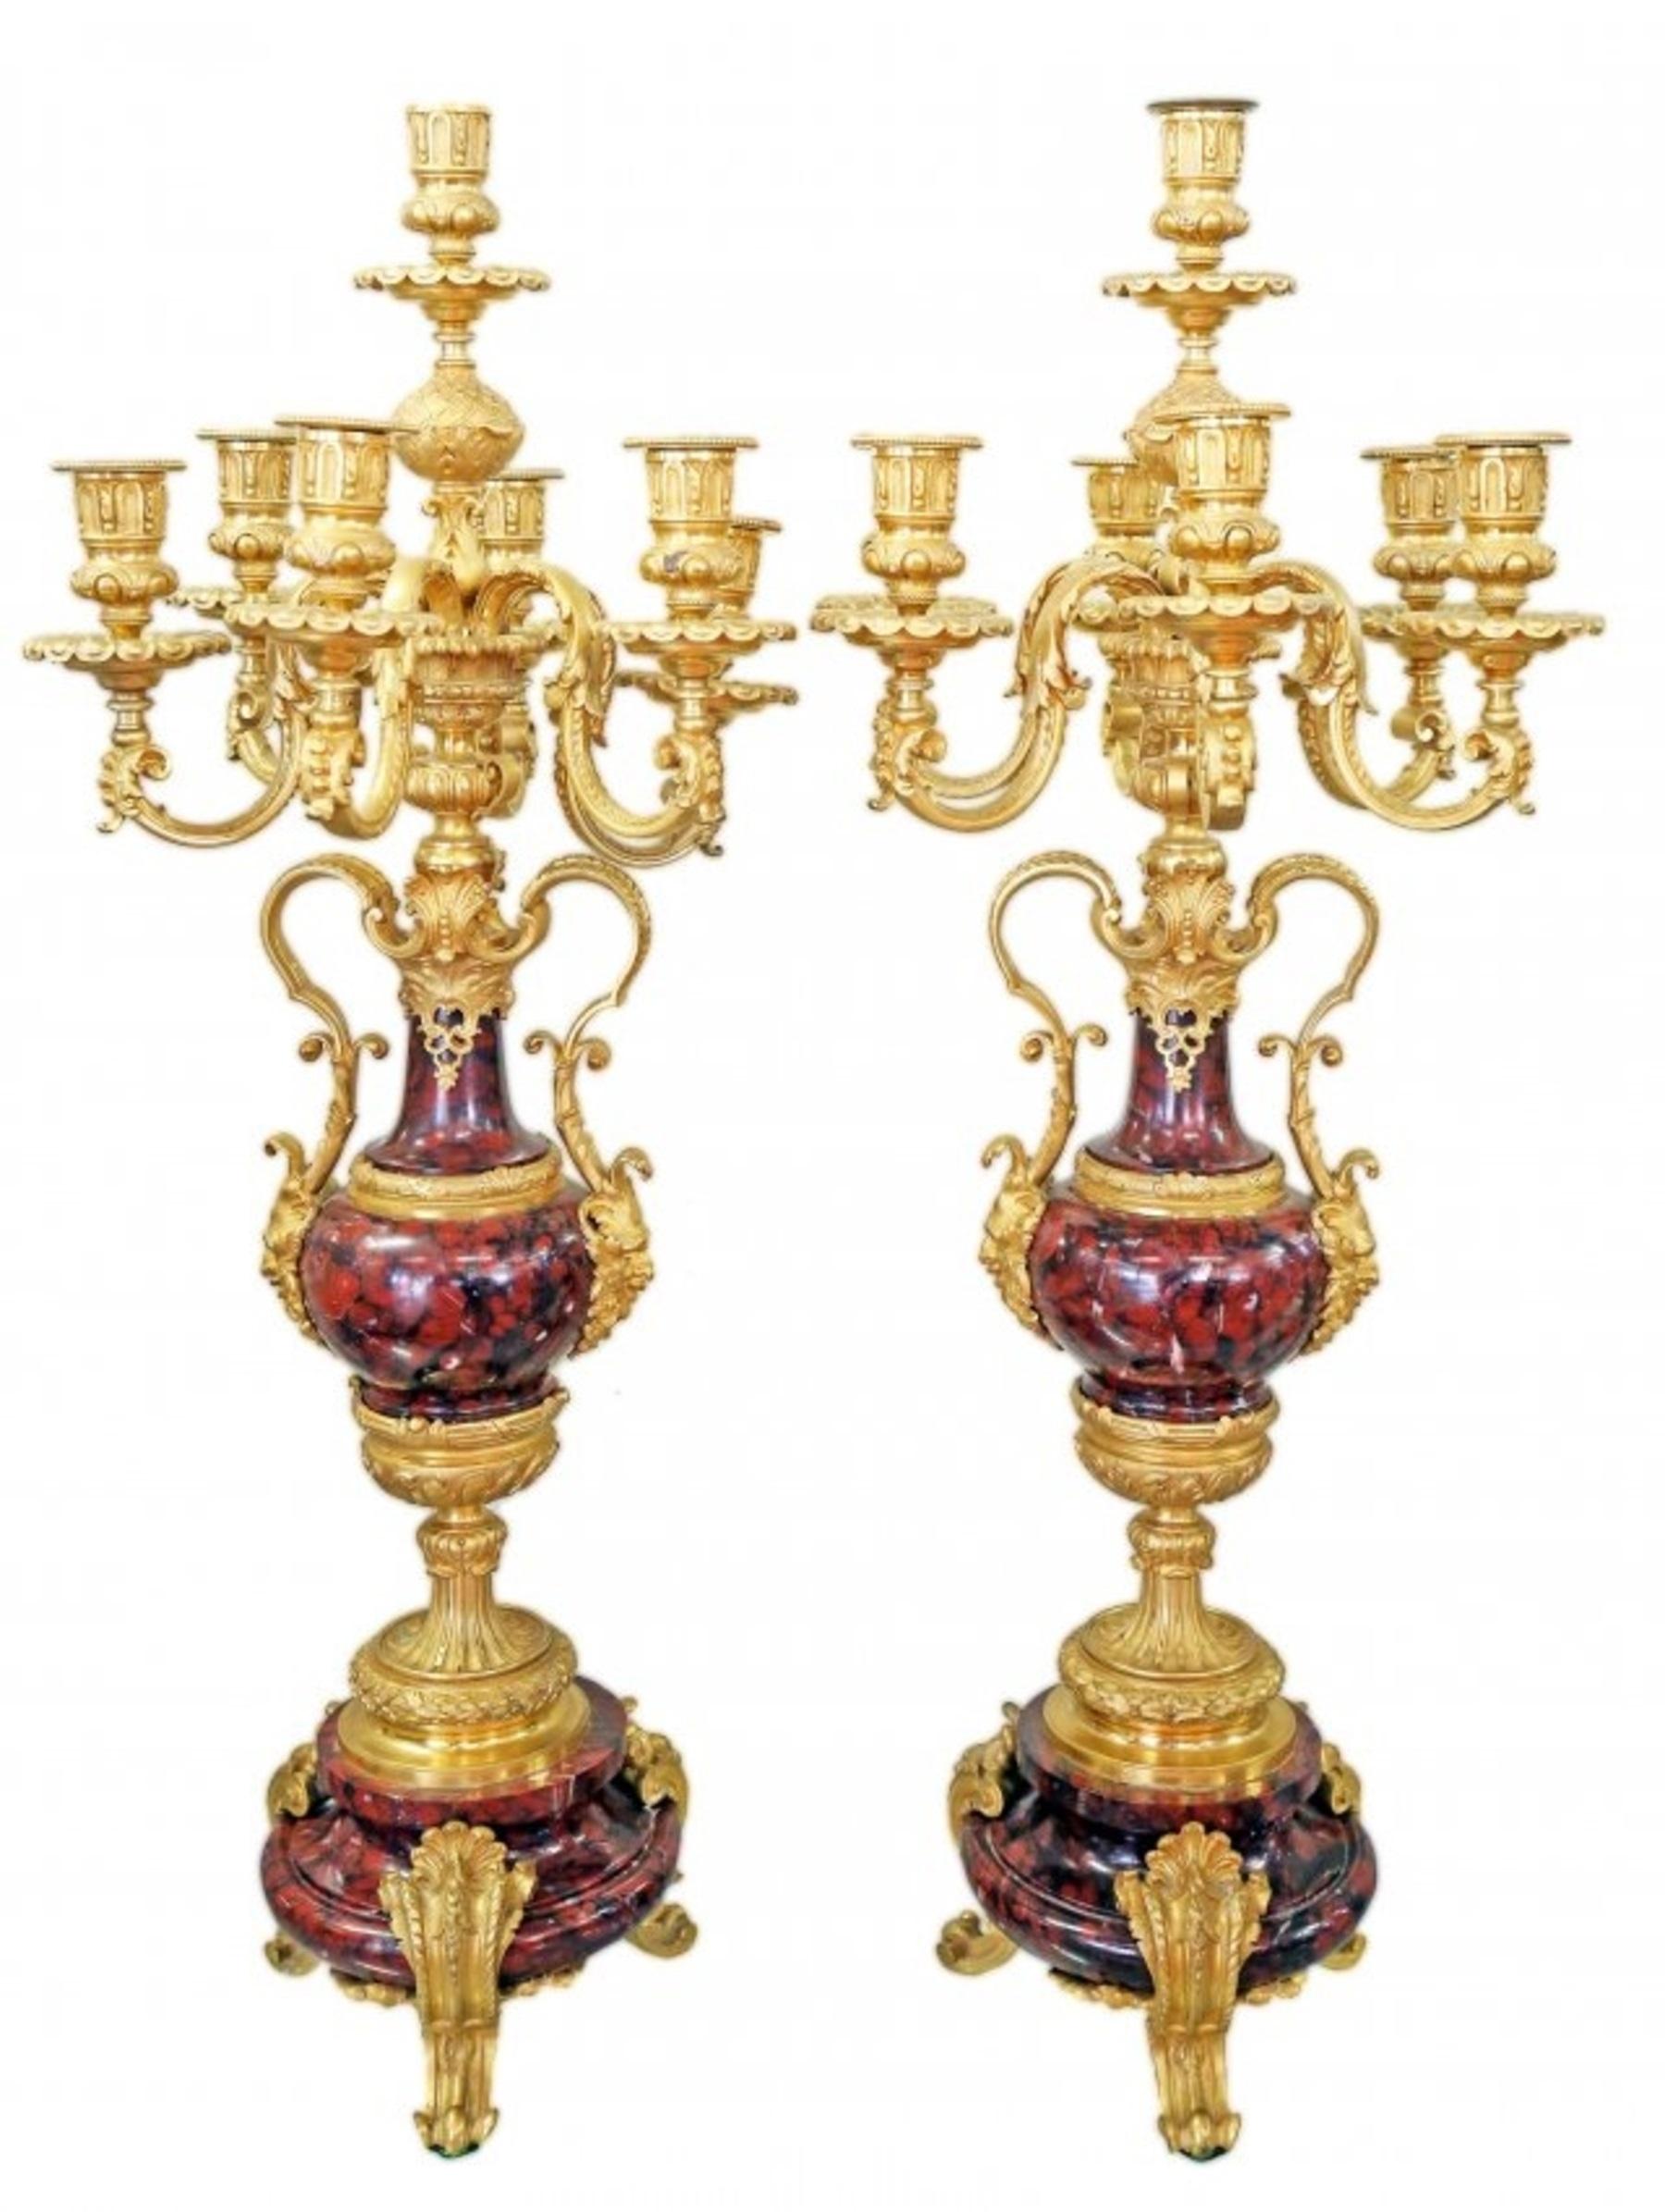 Louis XV-Stil vergoldete Bronze montiert Marmor sieben-Licht-Kandelaber
Jede klassische 